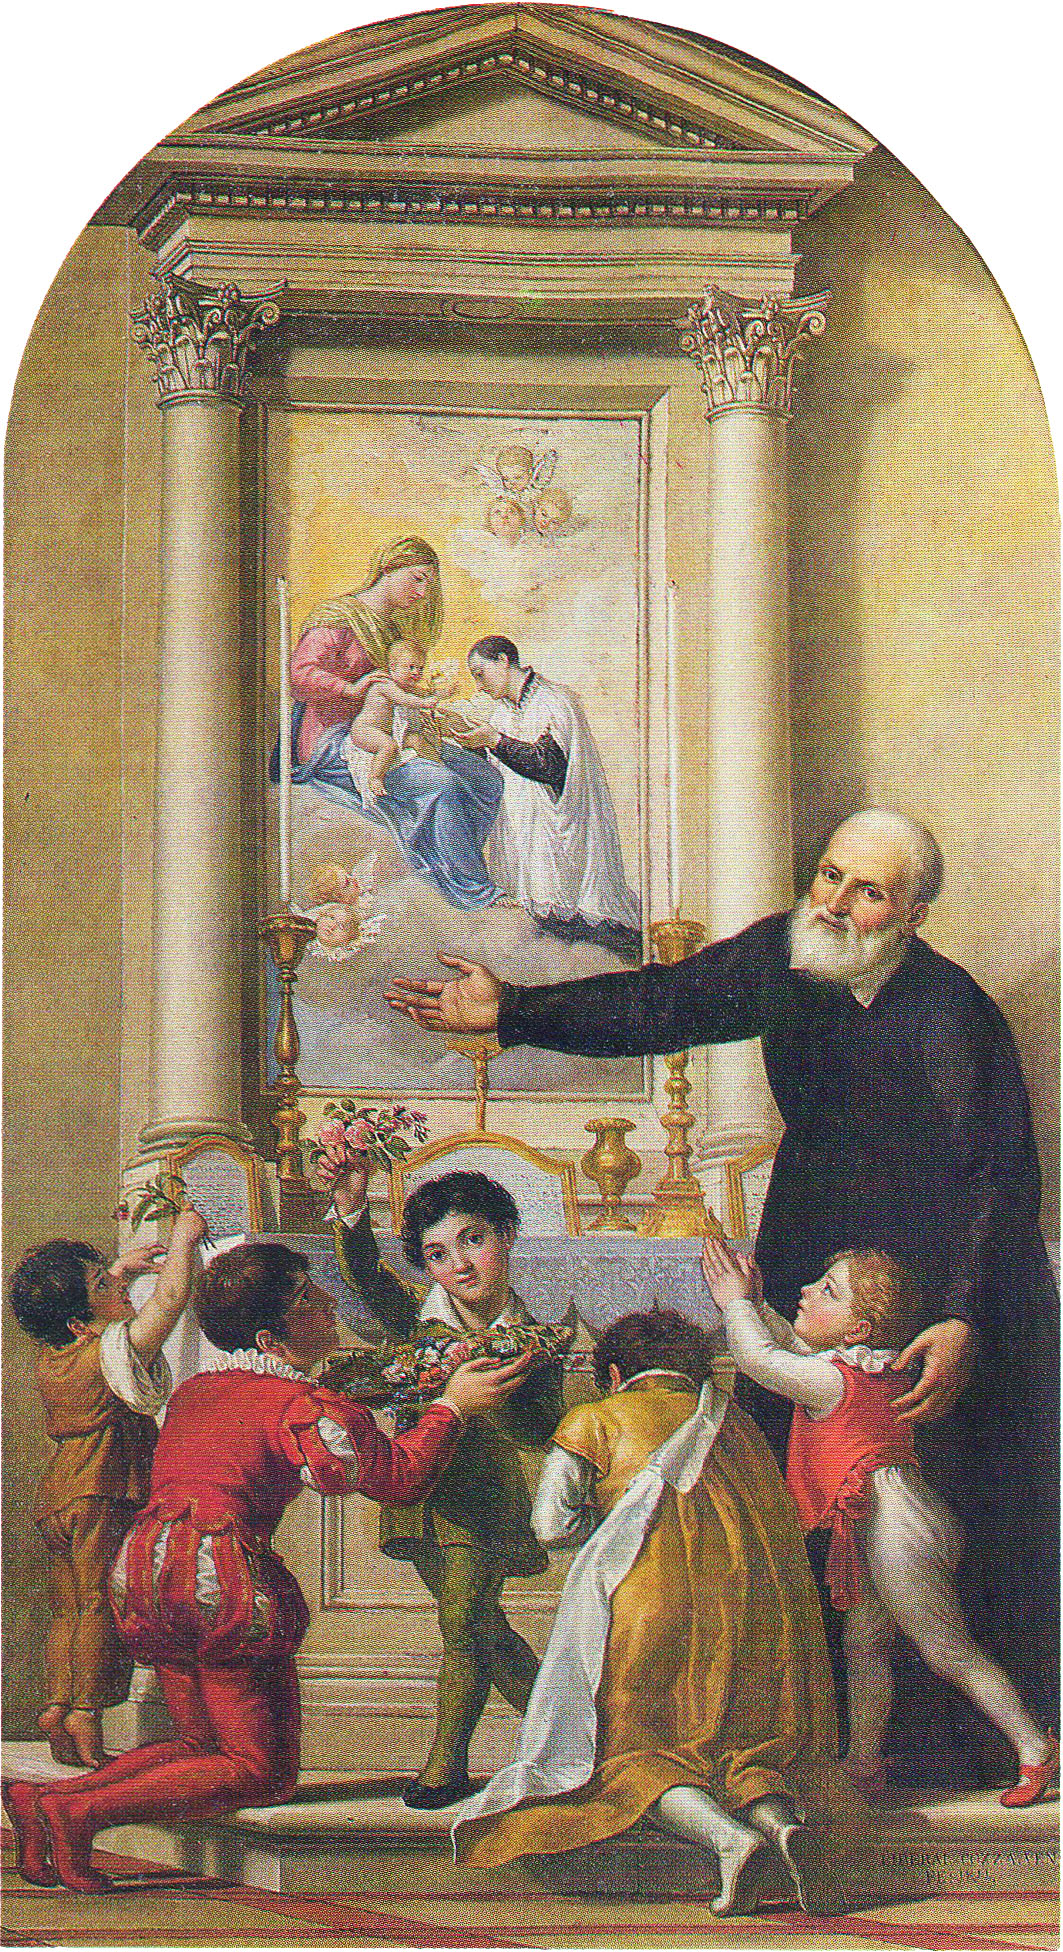 Filippo Noirs invite les enfants à vénérer la Vierge Marie dans images sacrée San_filippo_neri_invita_i_fanciulli_a_venerare_la_madonna_(liberale_cozza)